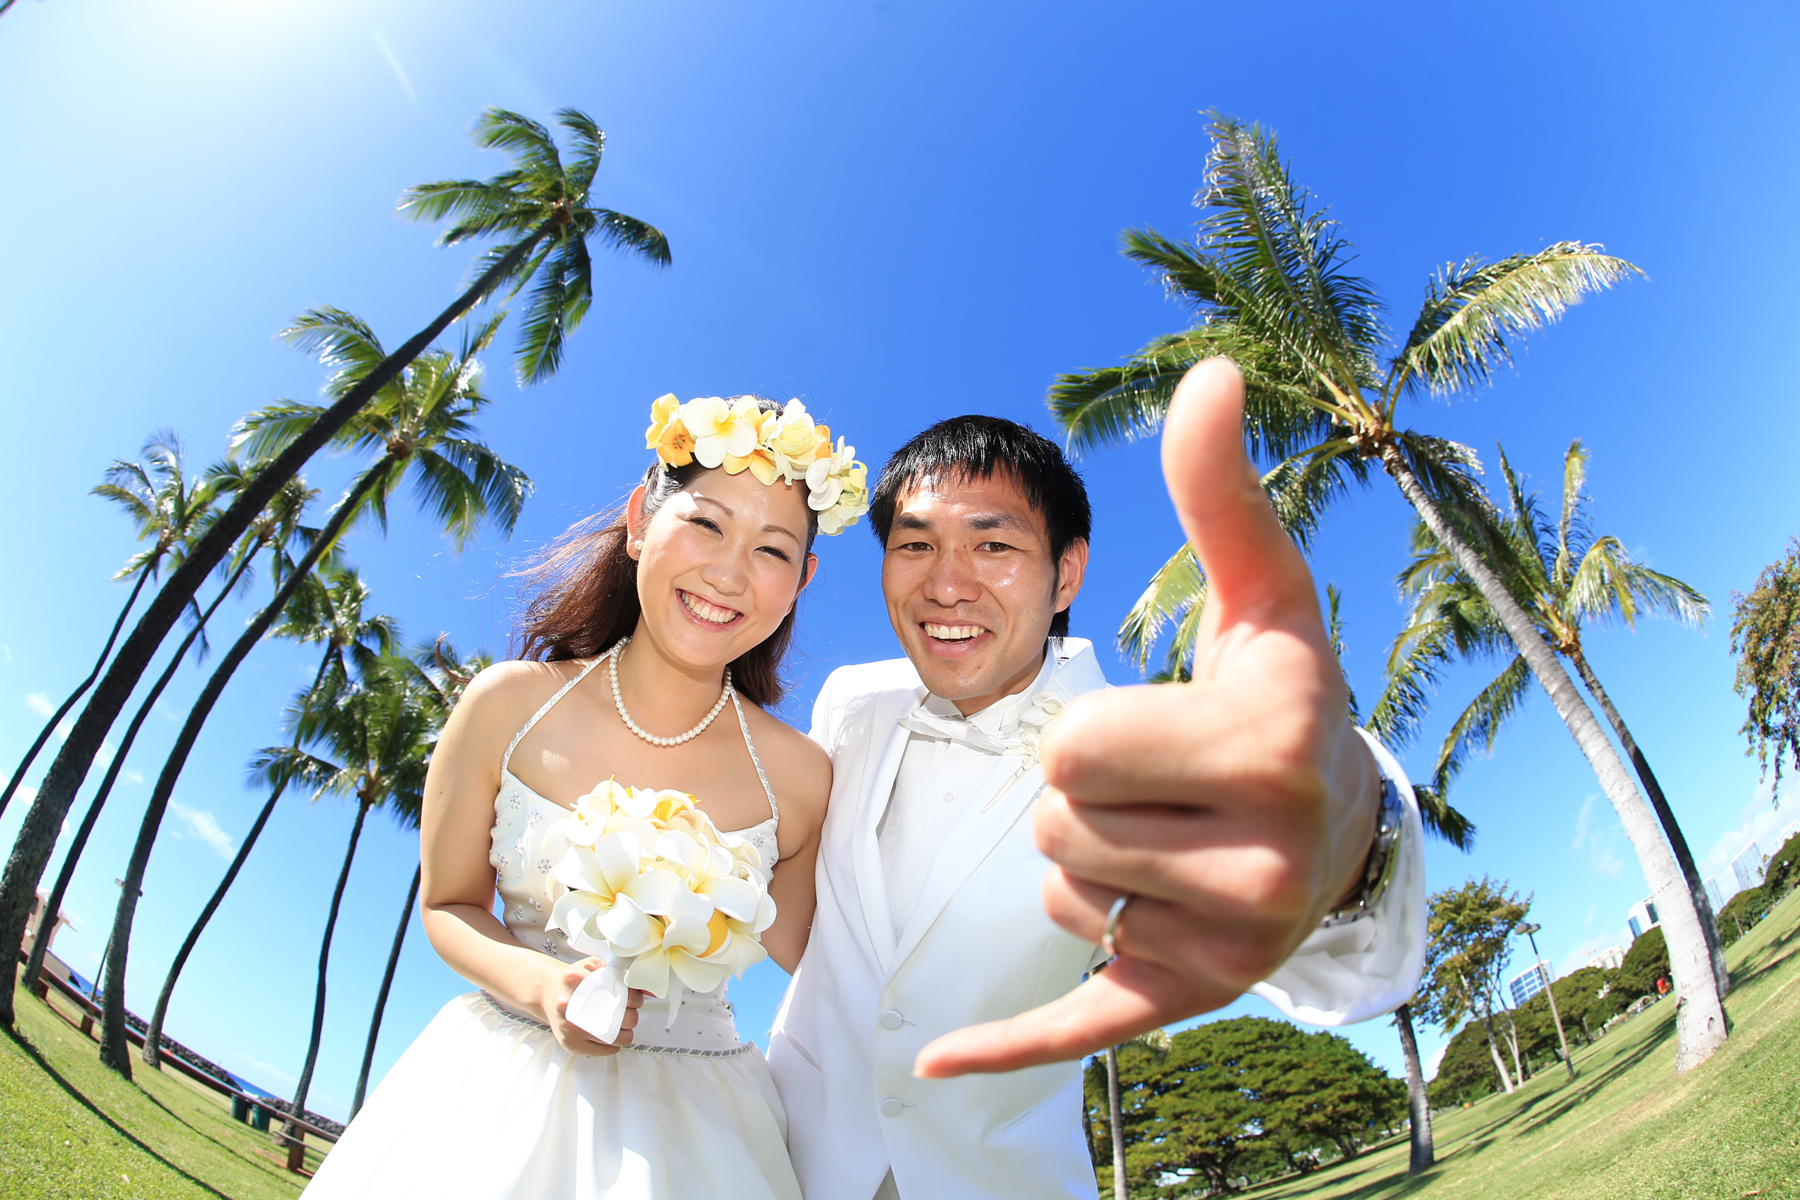 初ハワイ,不安,リノハワイウェディングお客様の声,ハワイ婚,上手なカメラマン